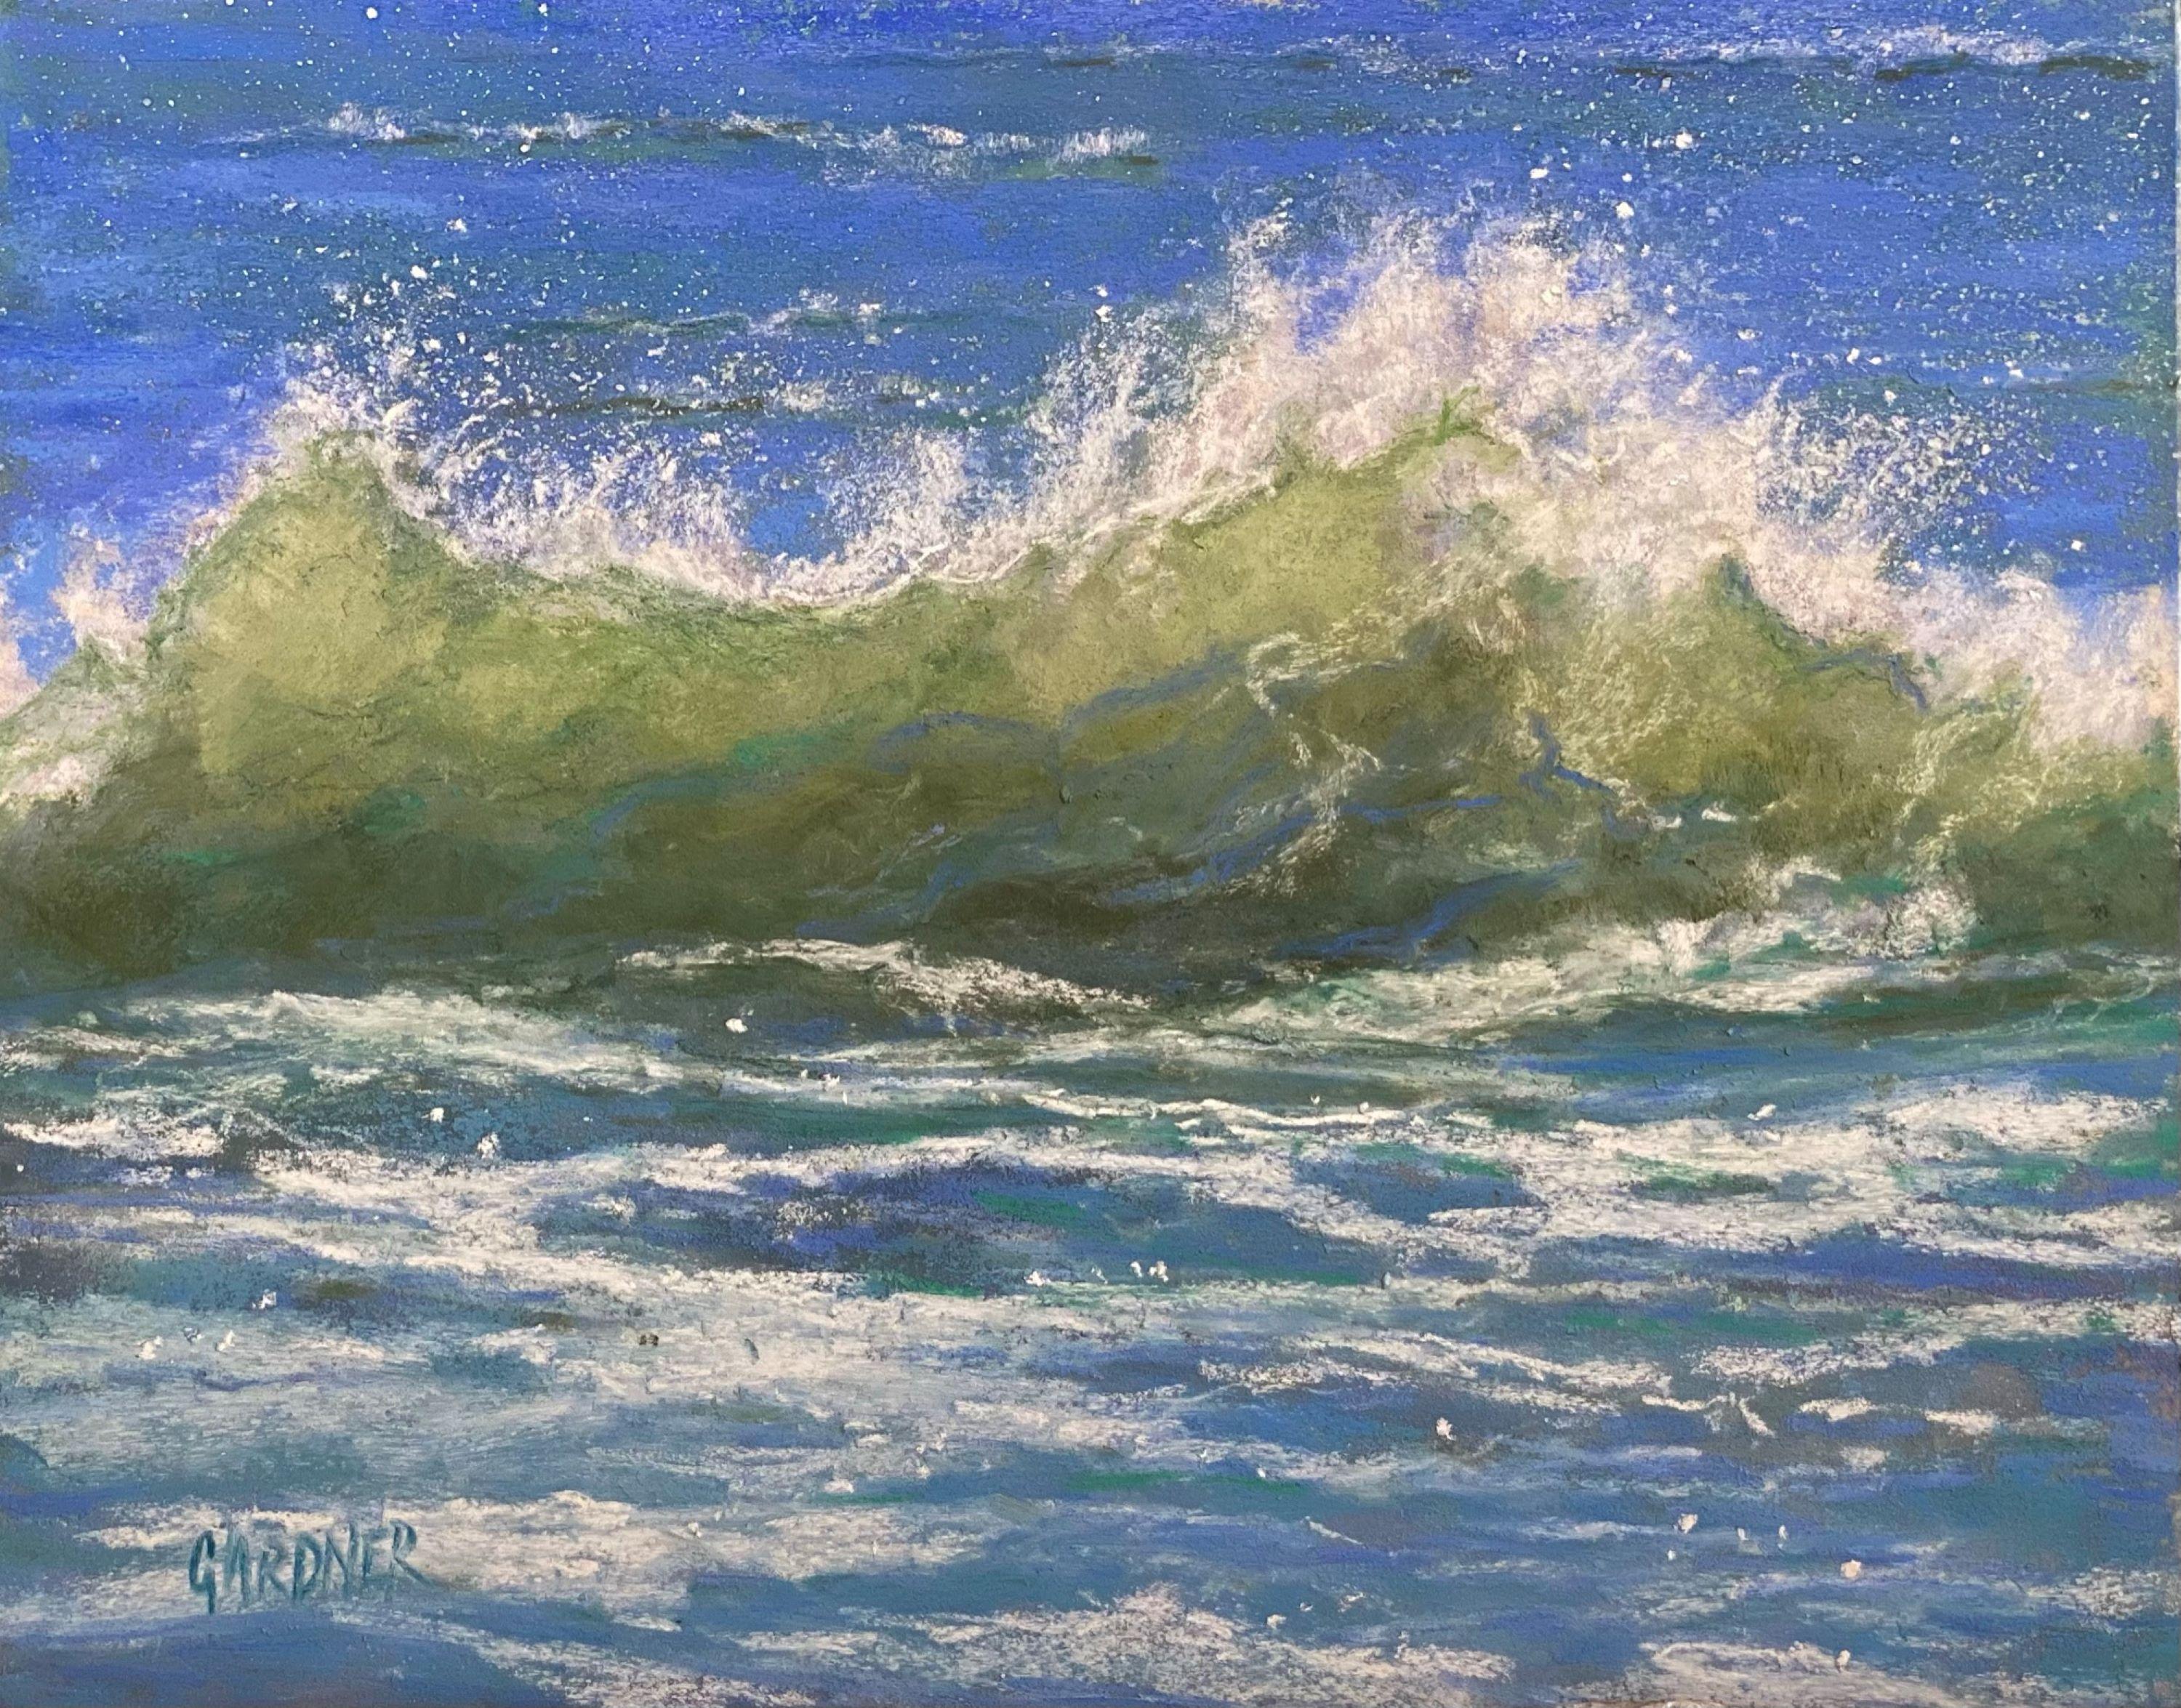 Twist and Shout 1, peinture originale de paysage marin au pastel sur panneau, 2021